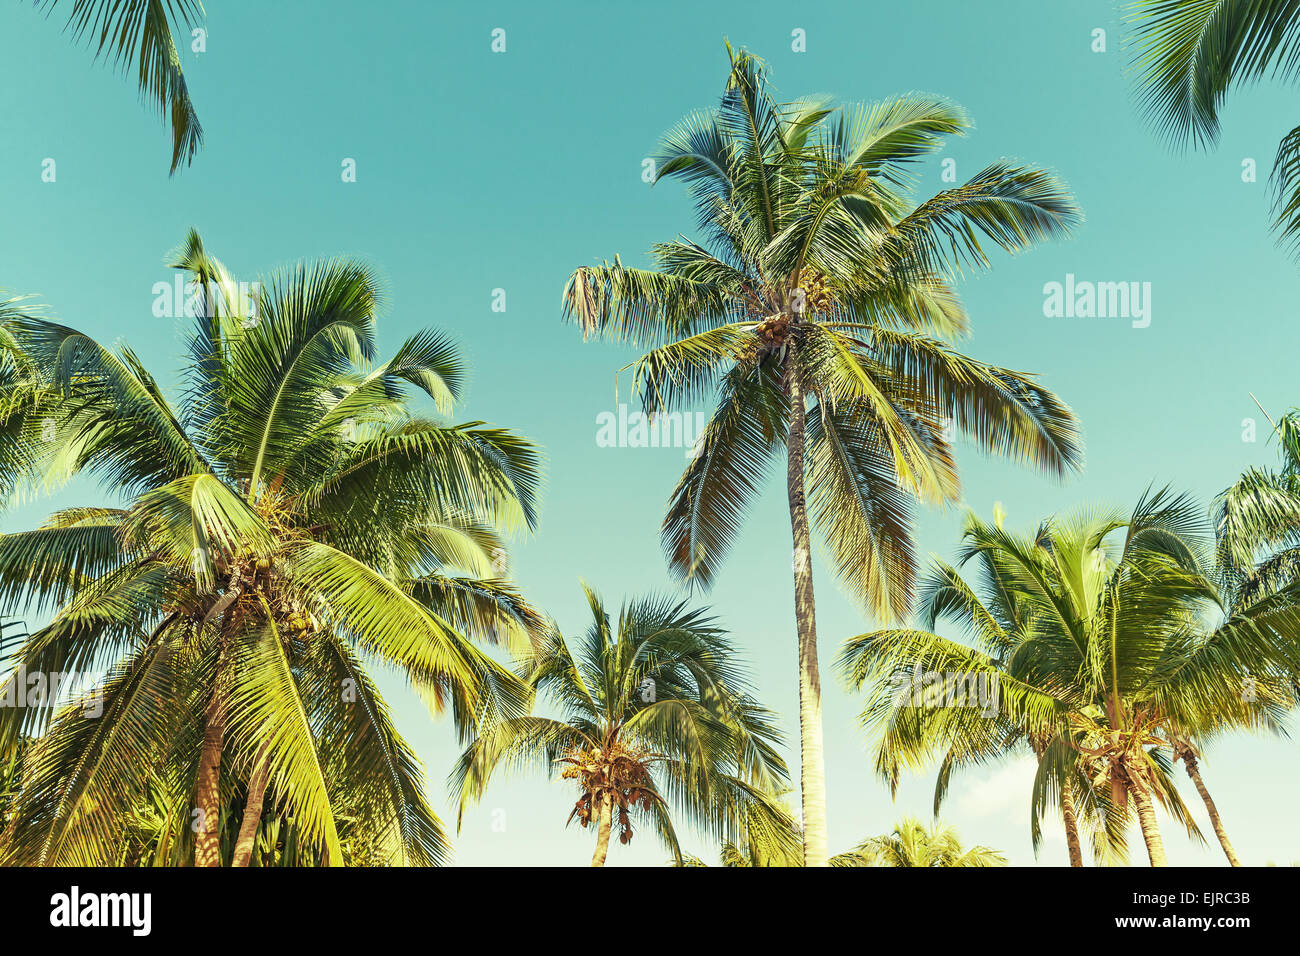 Kokosnuss-Palmen über klaren Himmelshintergrund. Vintage-Stil. Foto mit alten Stil grün getönten Filterwirkung Stockfoto